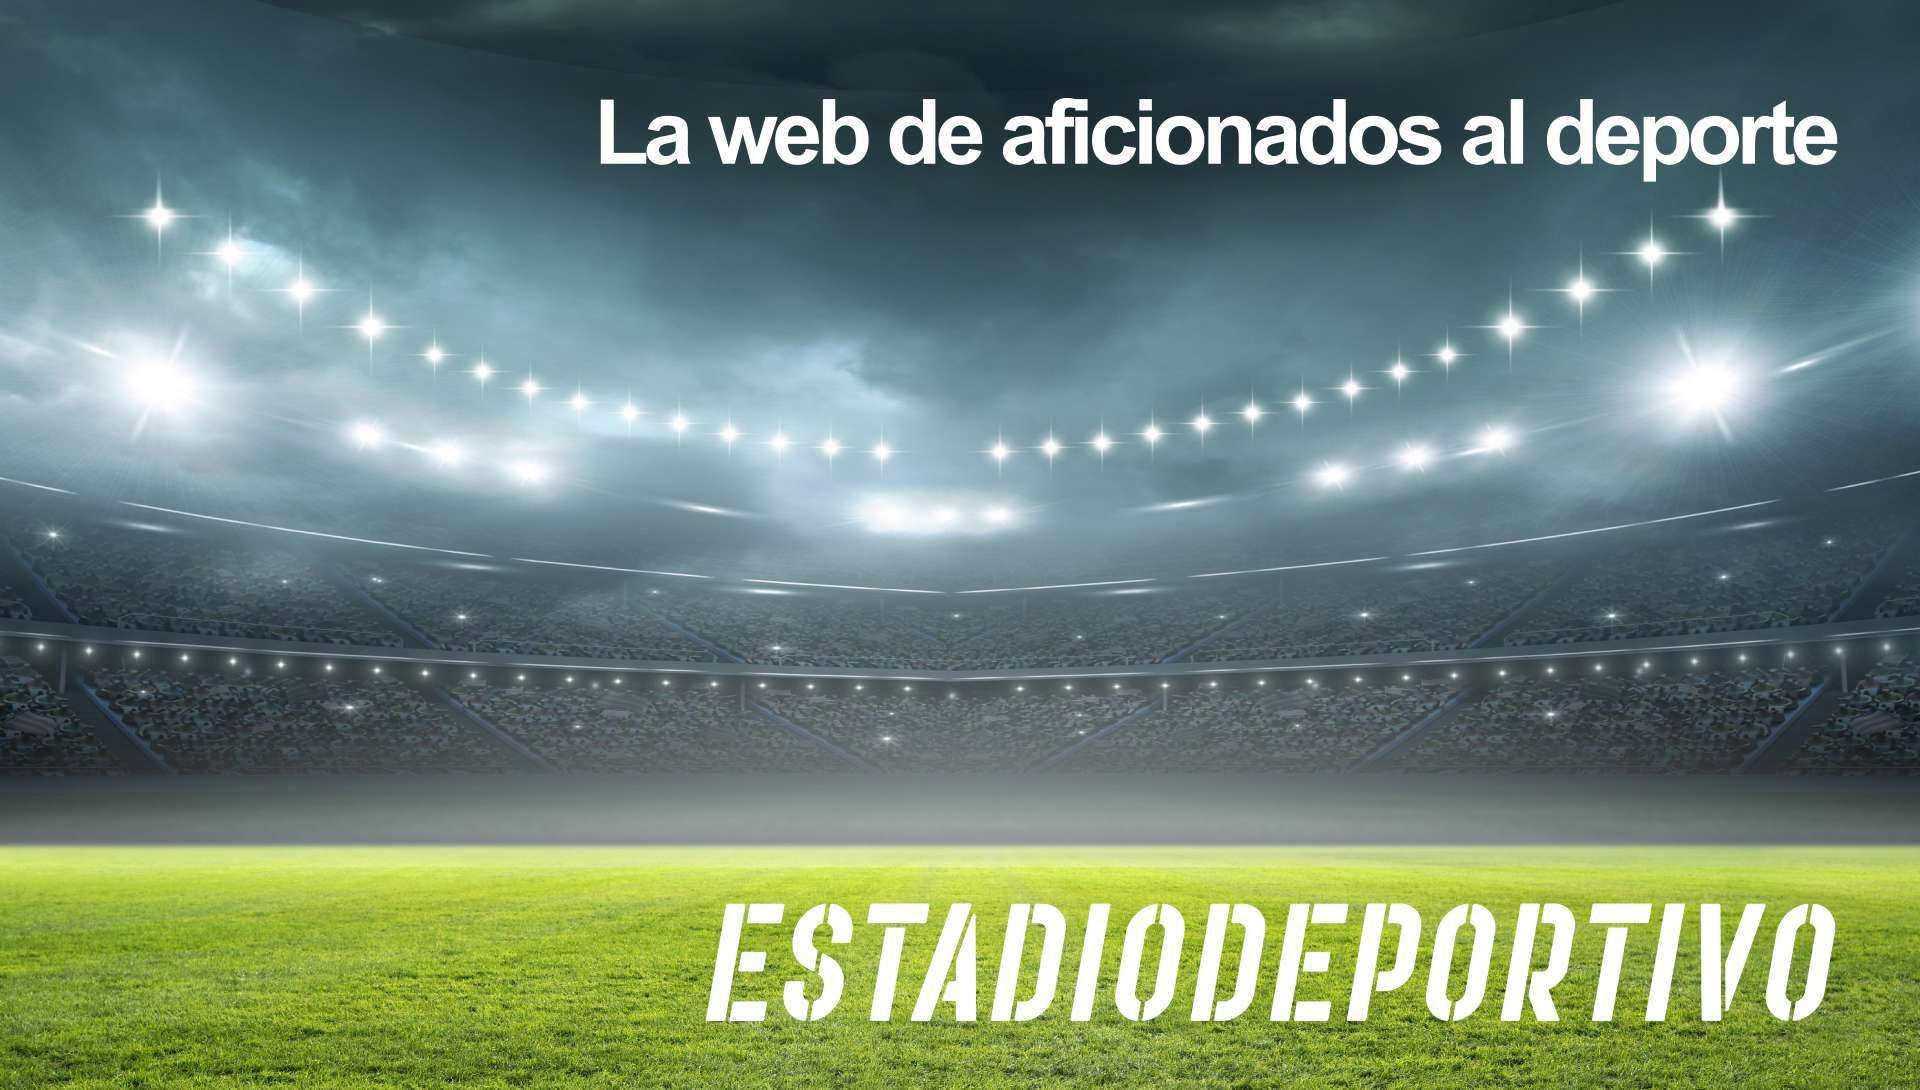 Prensa deportiva Española (Marca, As, Sport, Mundo Deportivo, Super Deporte, Estadio deportivo, etc) - Página 21 Portada_2